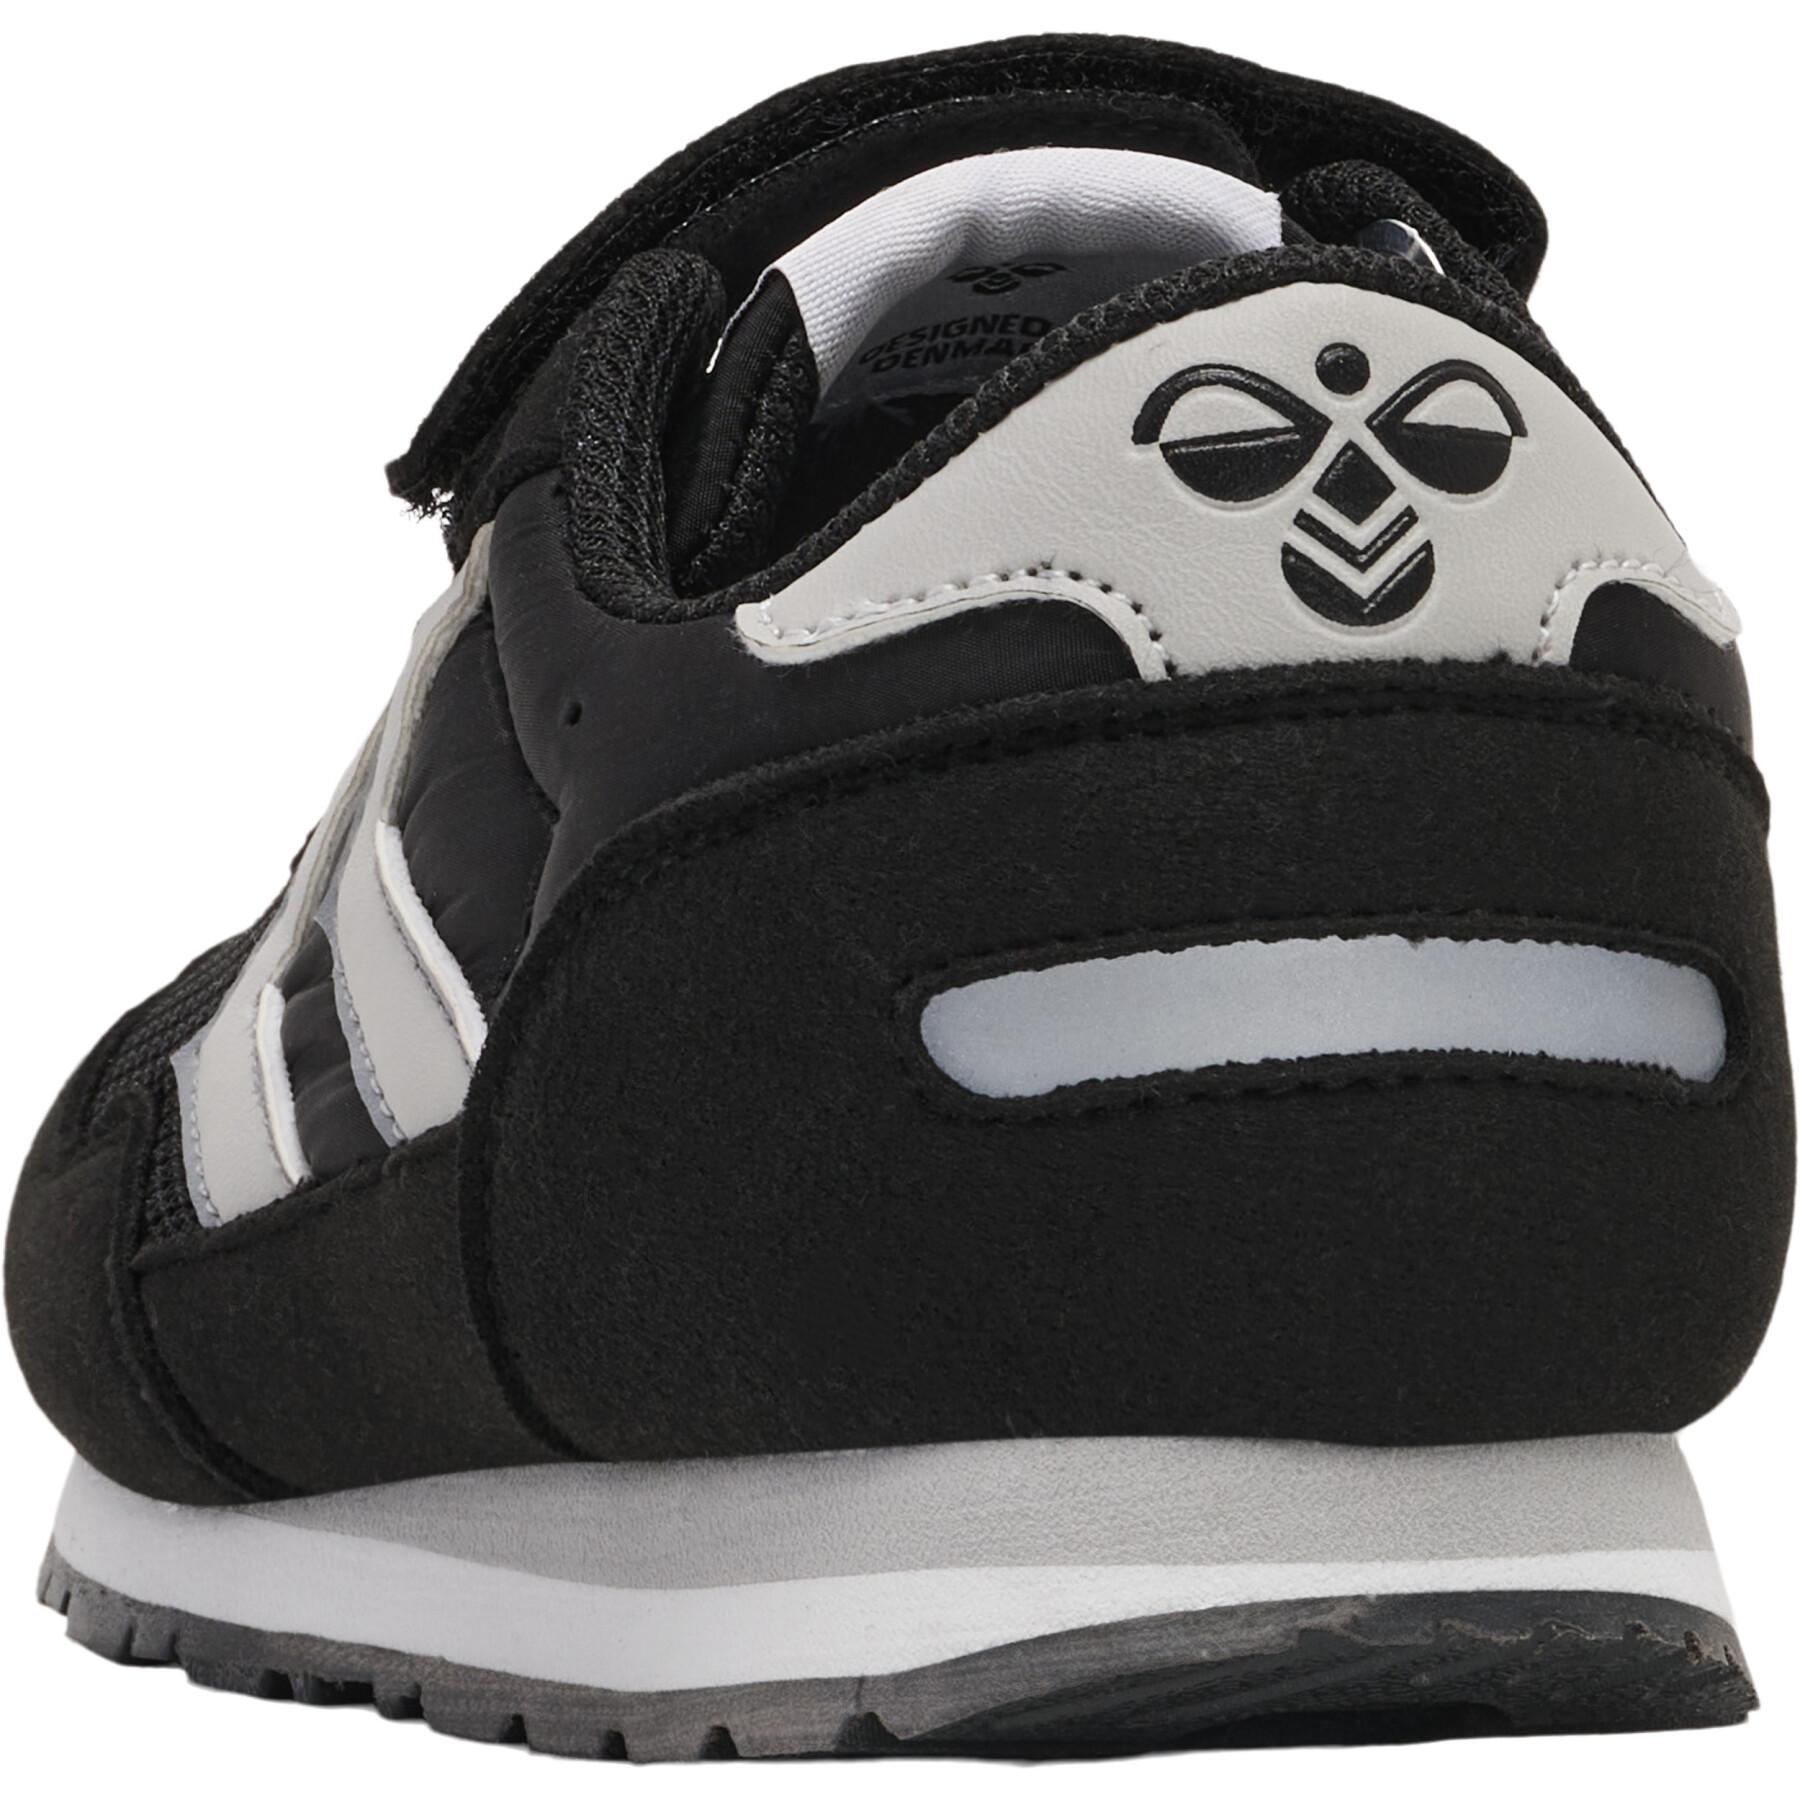 Children's sneakers Hummel Reflex